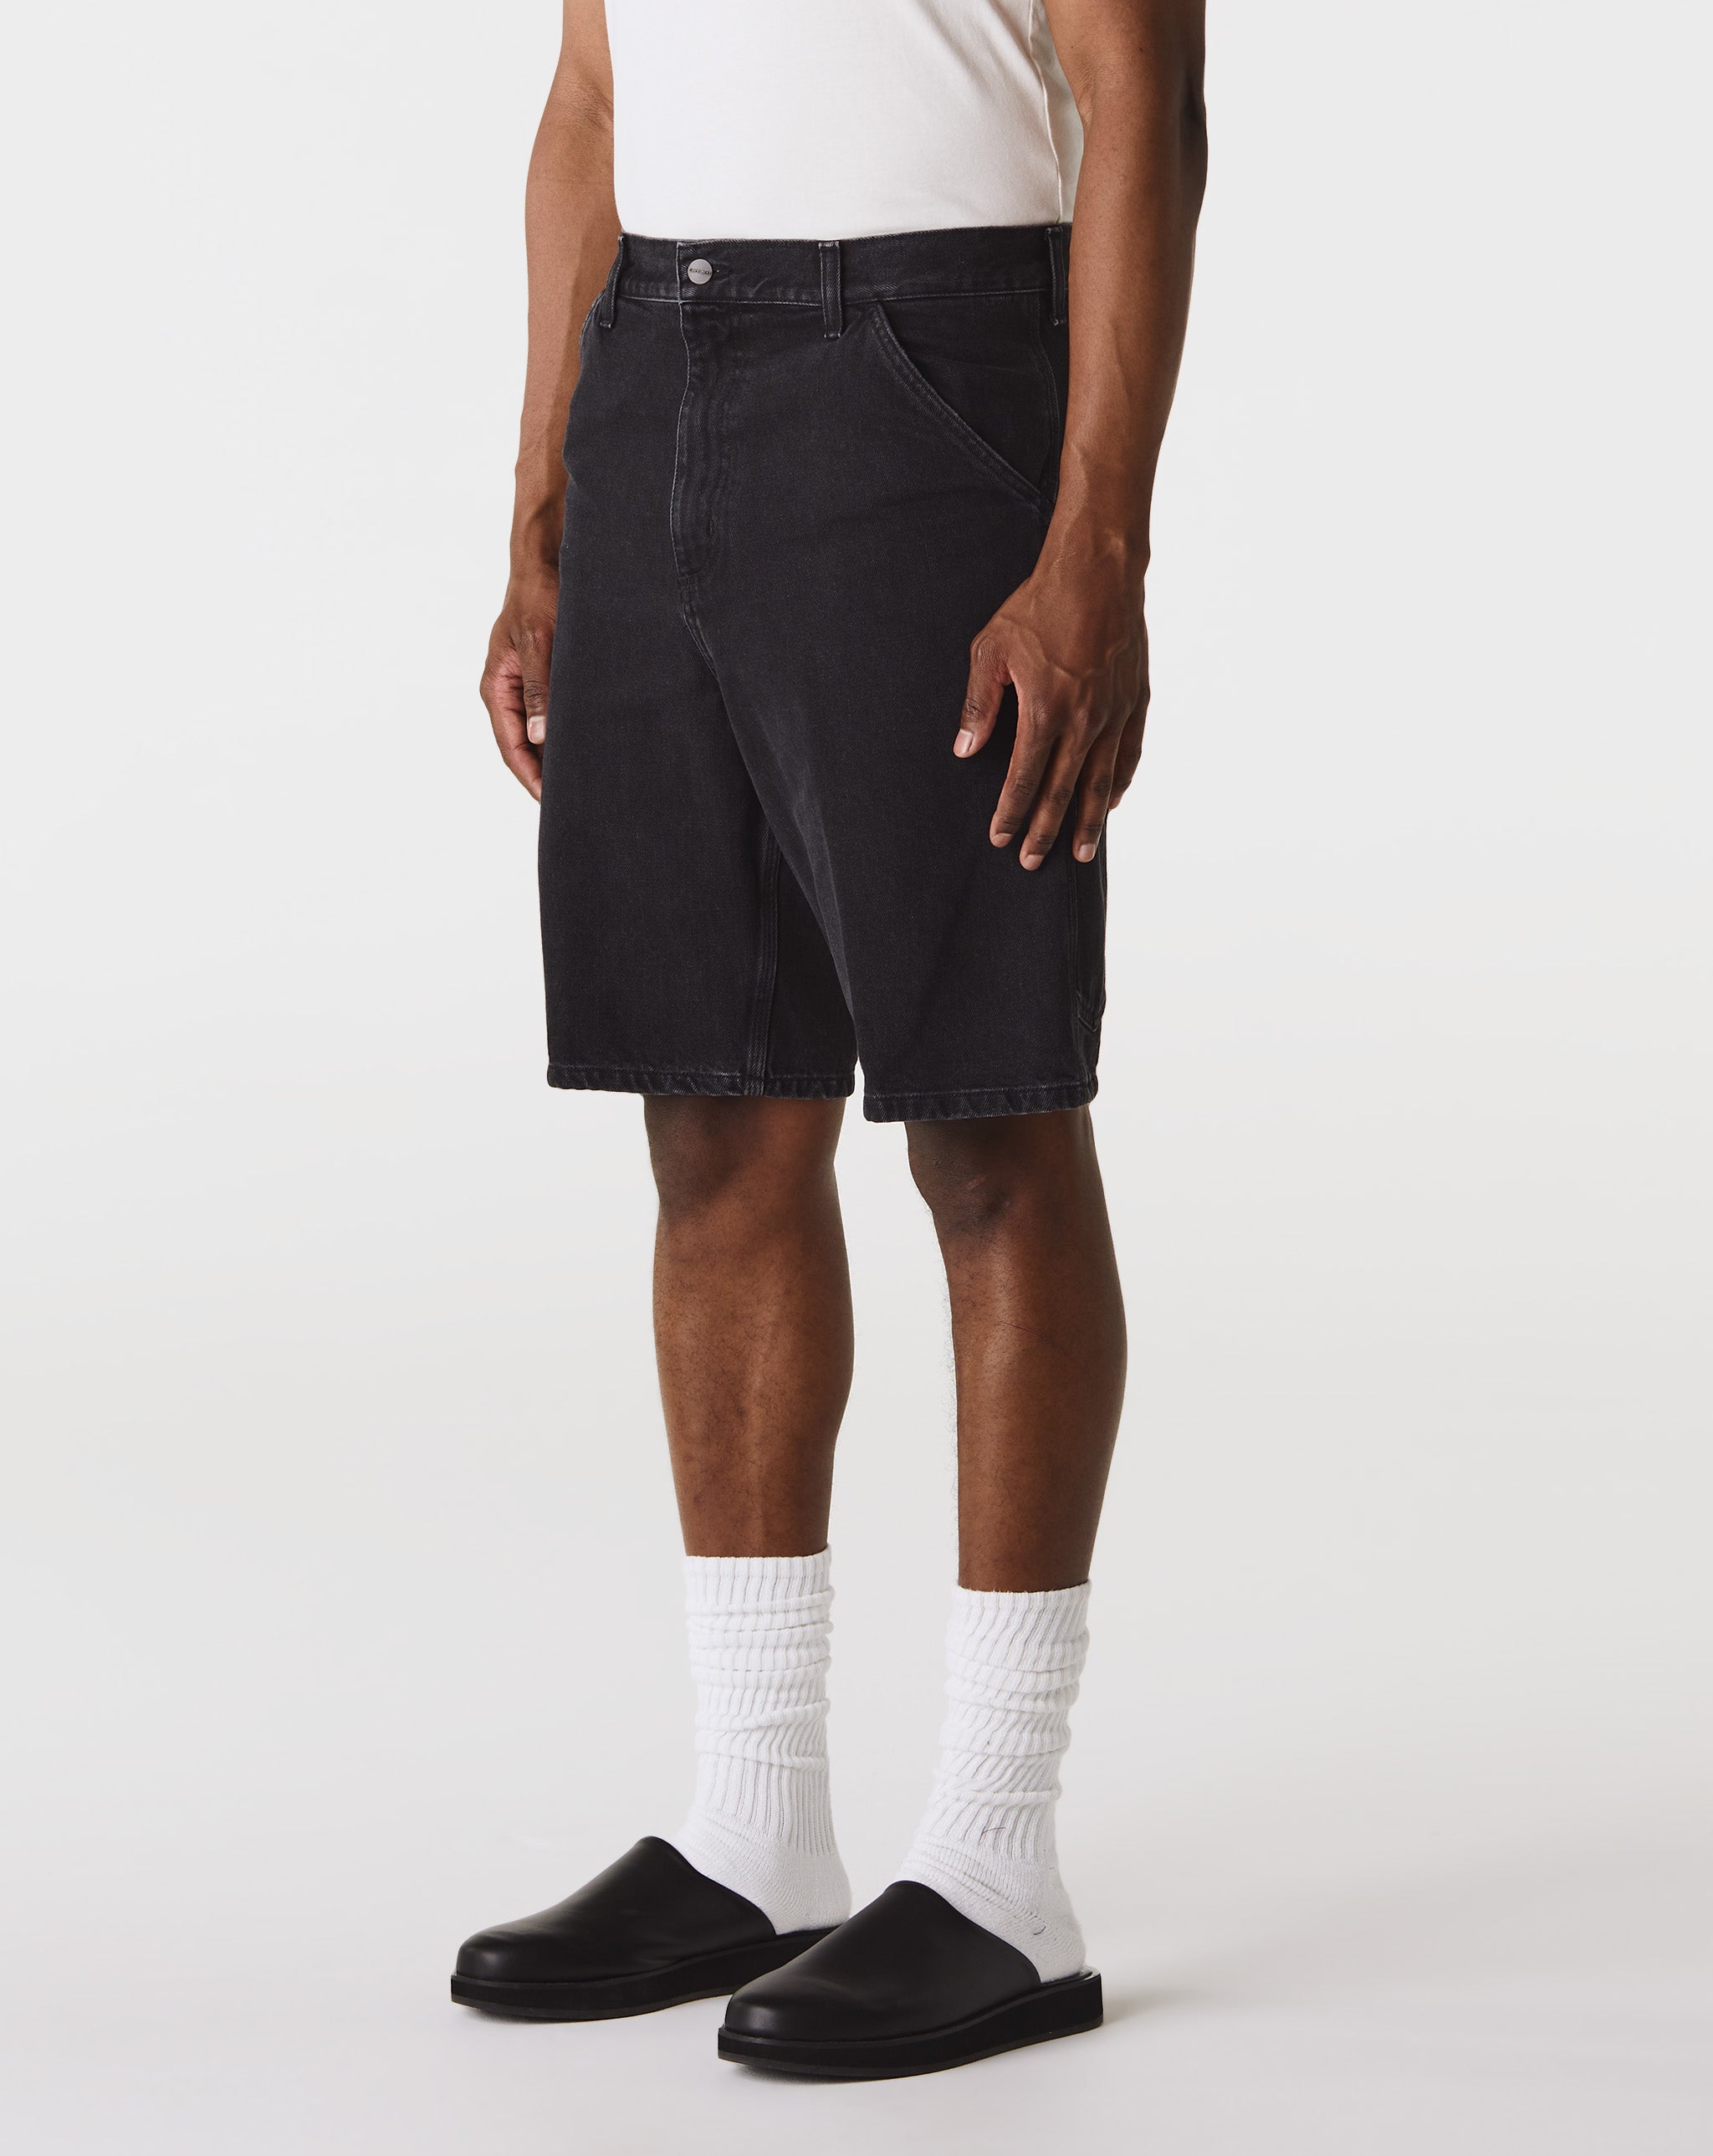 Carhartt WIP Breacher Denim Shorts  - Cheap Urlfreeze Jordan outlet